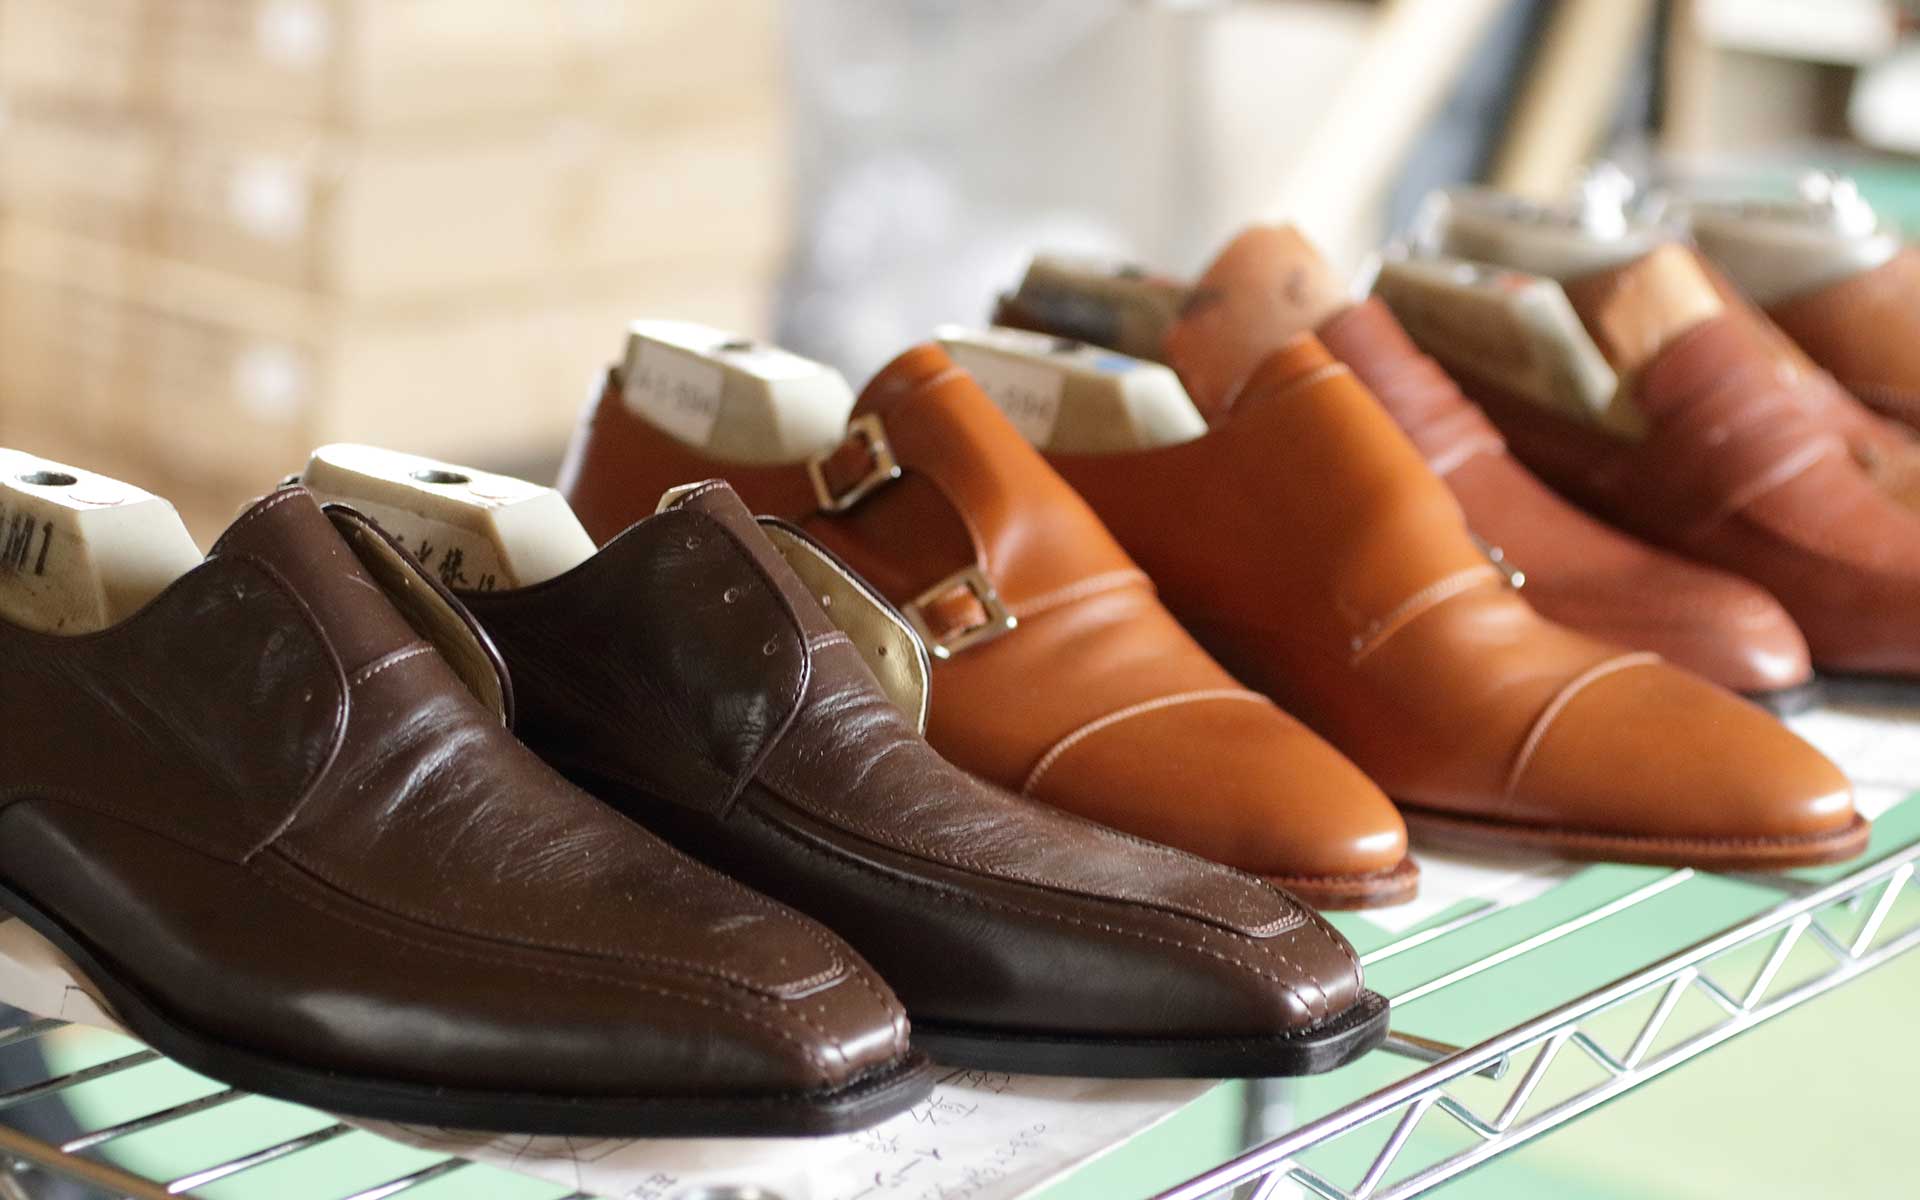 「コトワ靴製作所」で製作された八幡靴